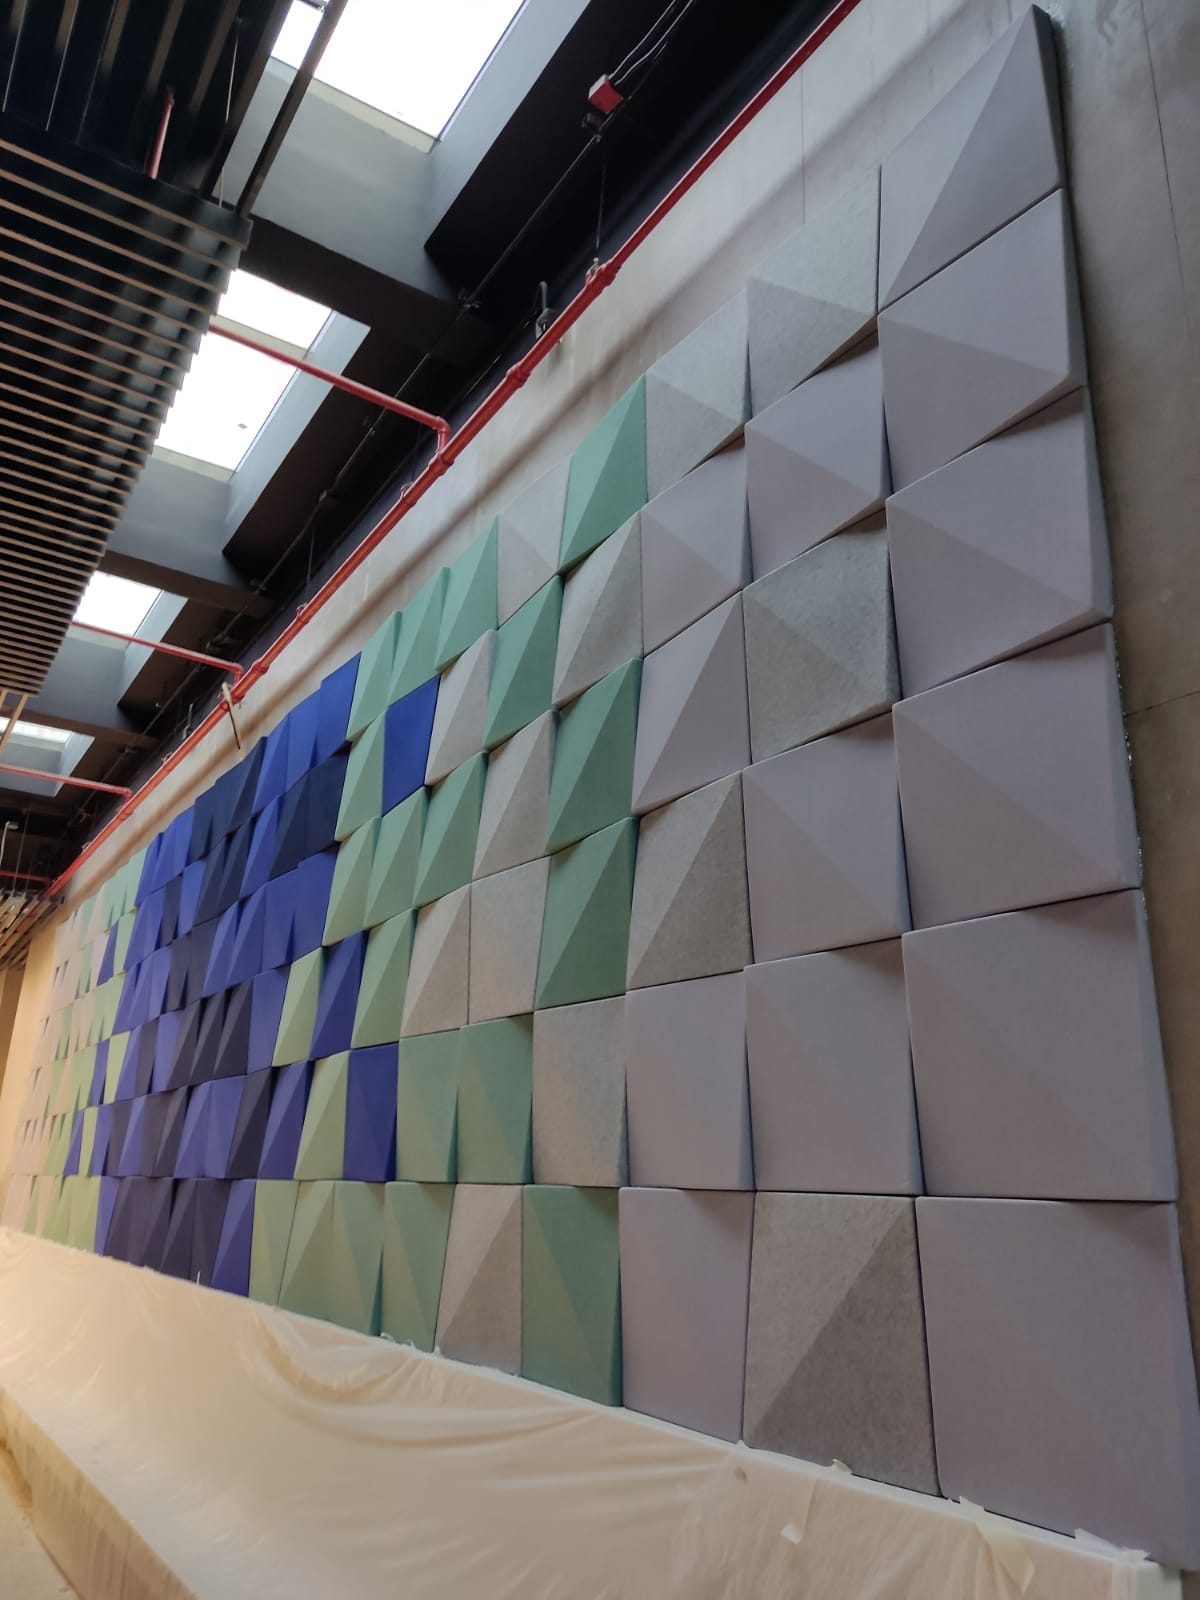 Decrasound 3D acoustic panels